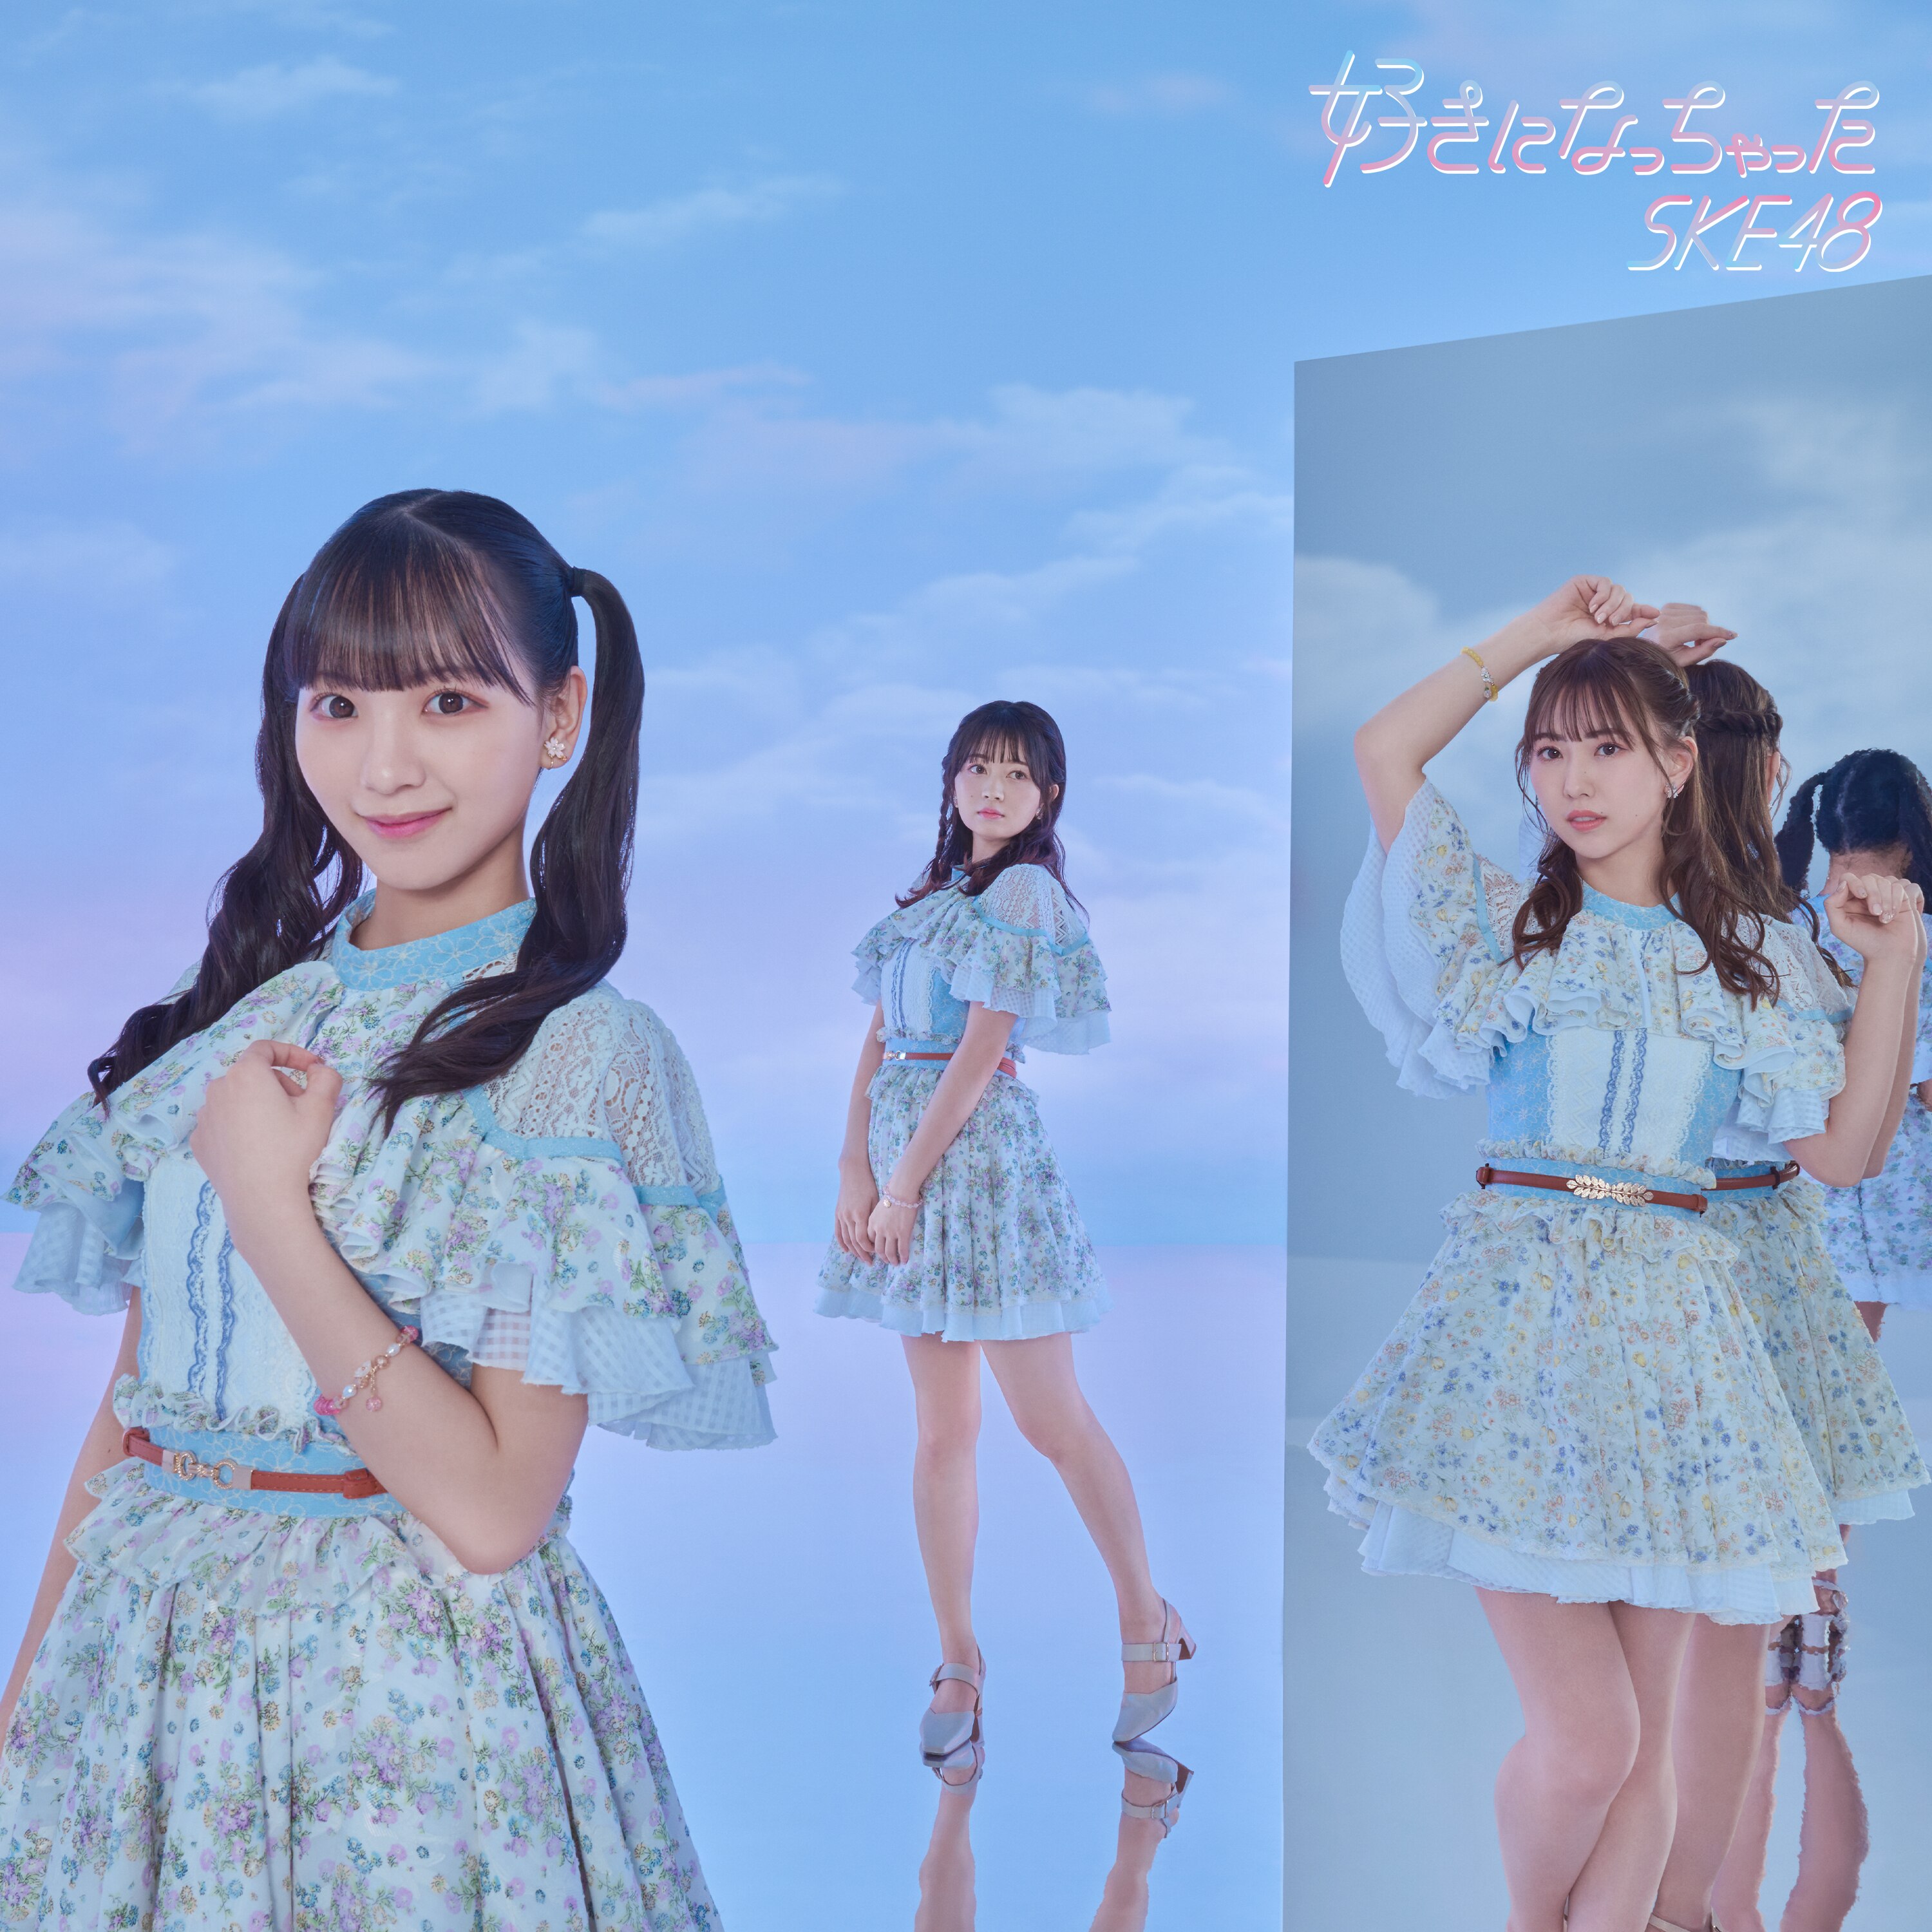 SKE48 2023年7月5日(水)発売31stシングル タイトル/ジャケット写真 